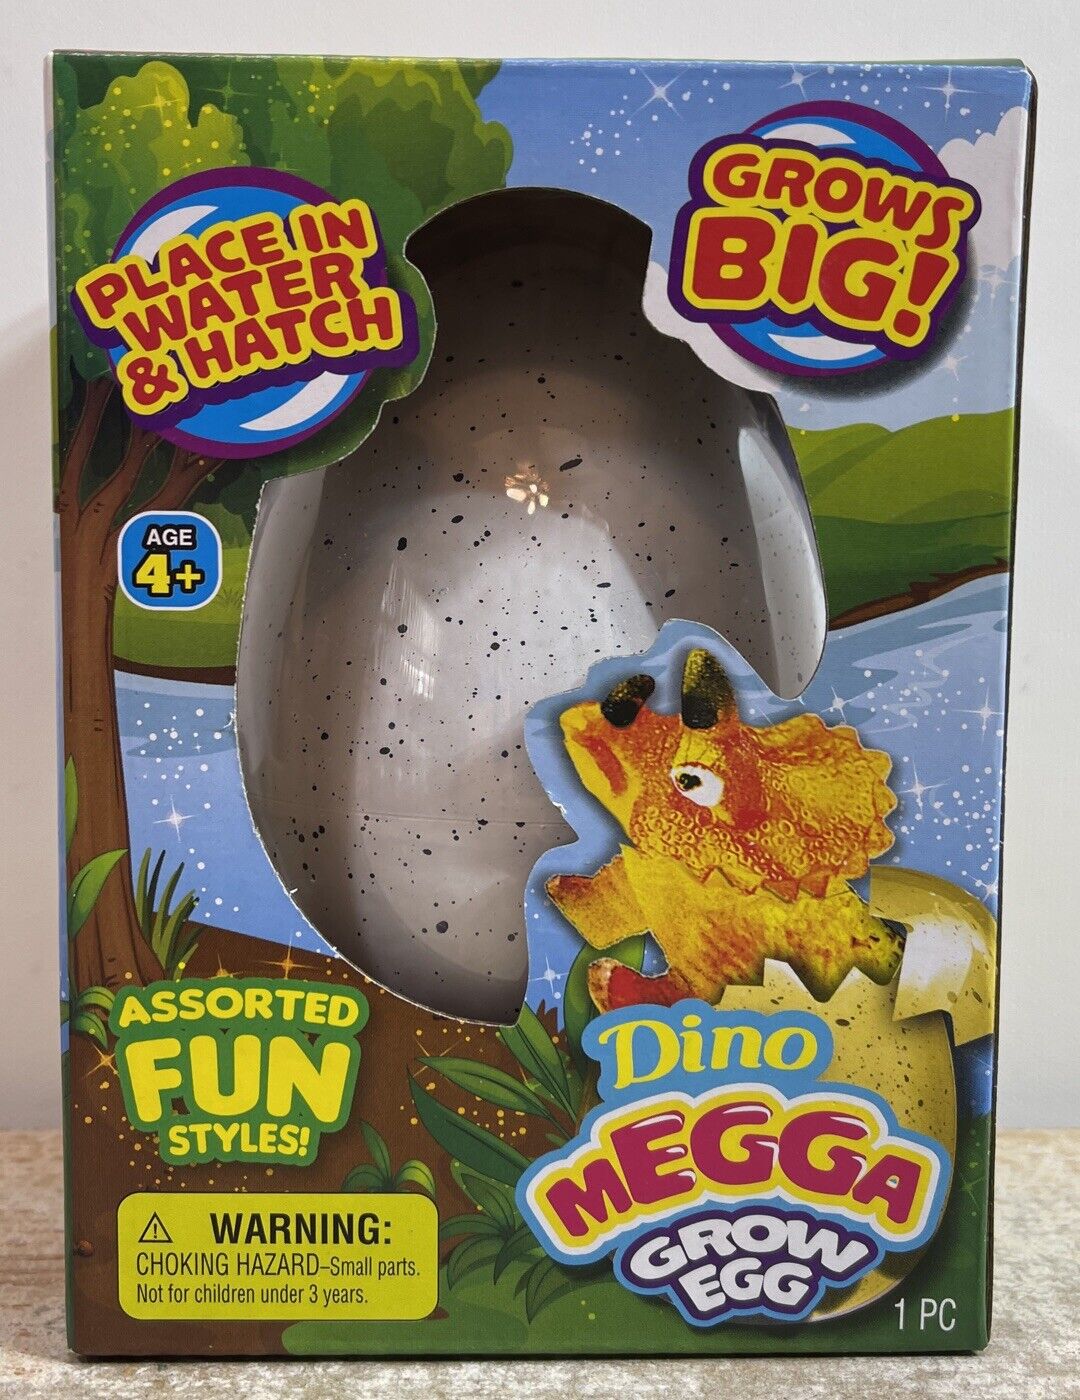 Dino Megga Grow Egg Water Hatch. Grow A Dinosaur. Hatch An Egg, Grow Your Own